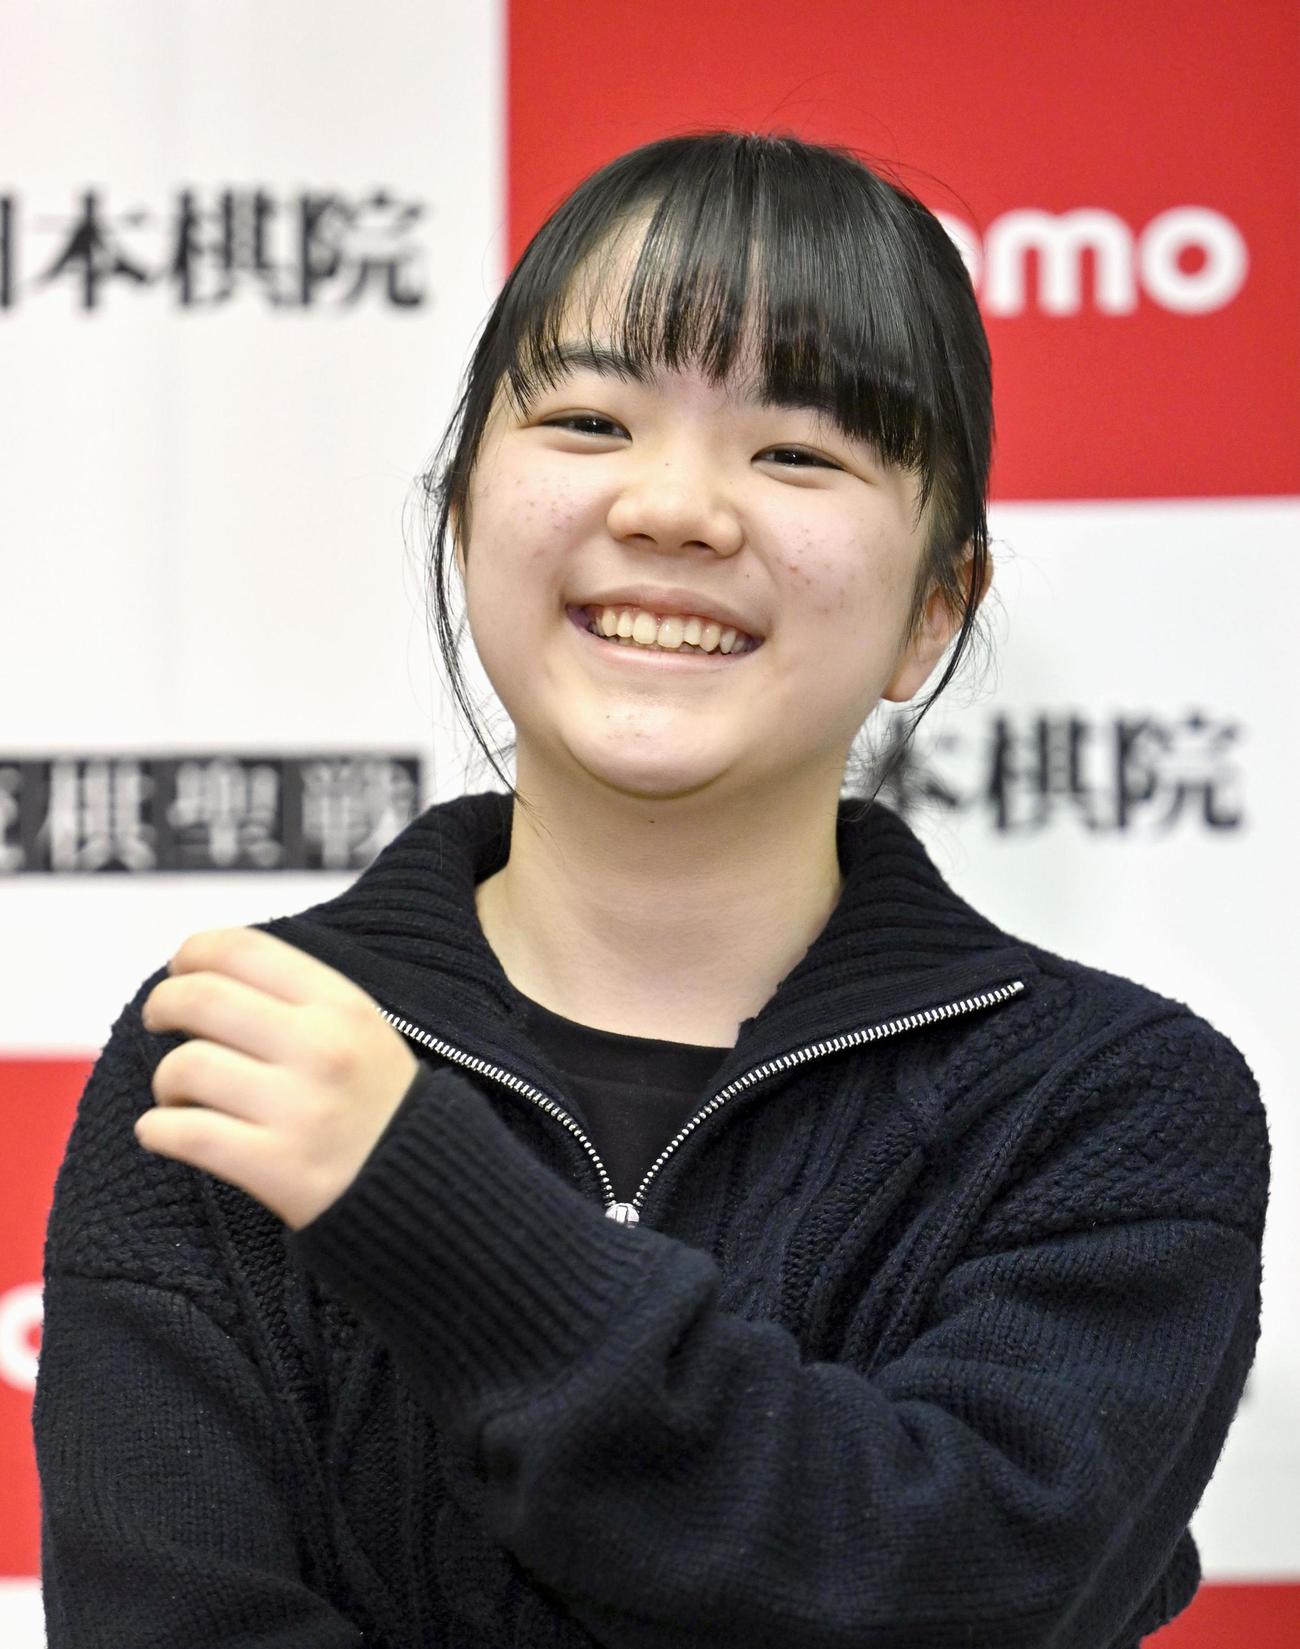 史上最年少13歳11カ月で囲碁の女流棋聖を獲得した仲邑菫三段は会見で笑顔